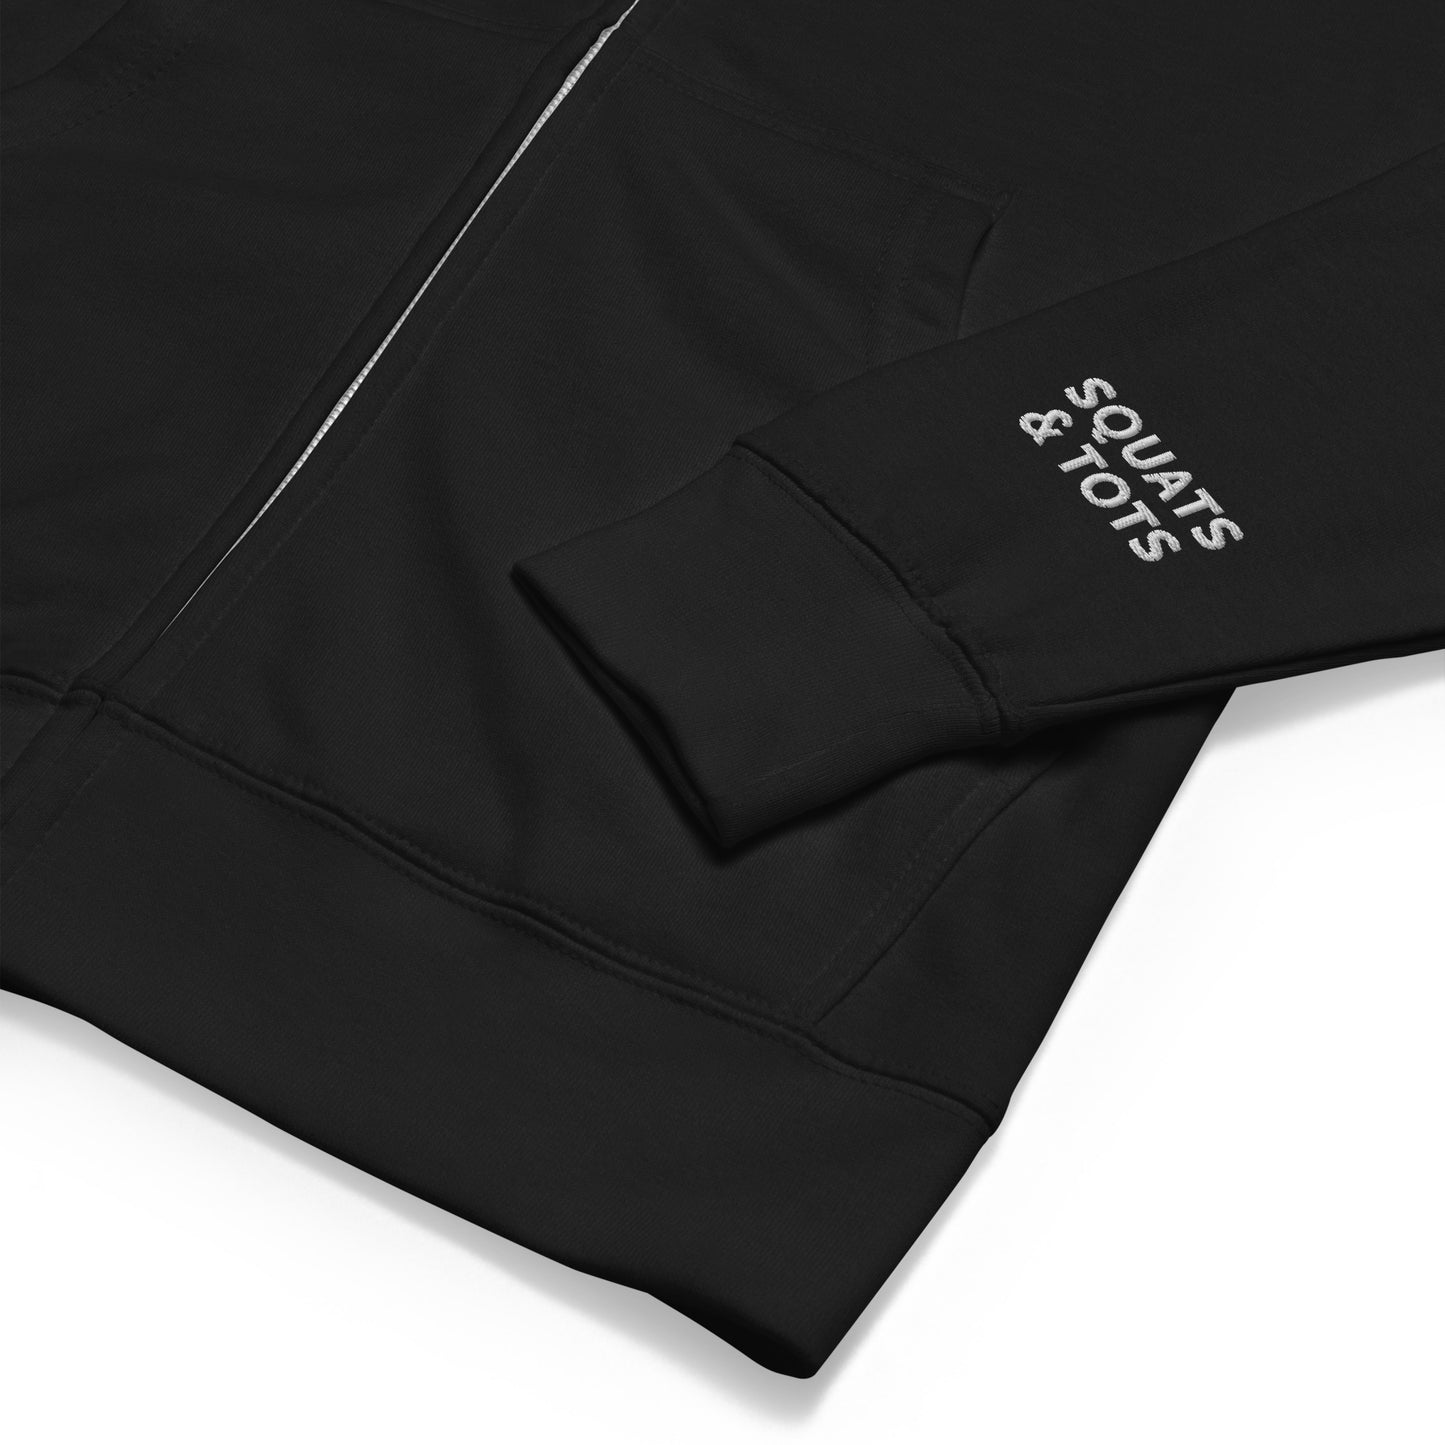 Squats and Tots Logo Unisex fleece zip up hoodie